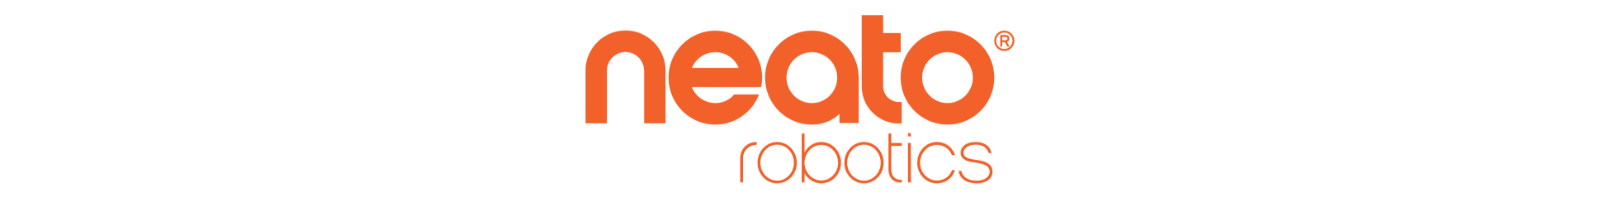 neato robotics